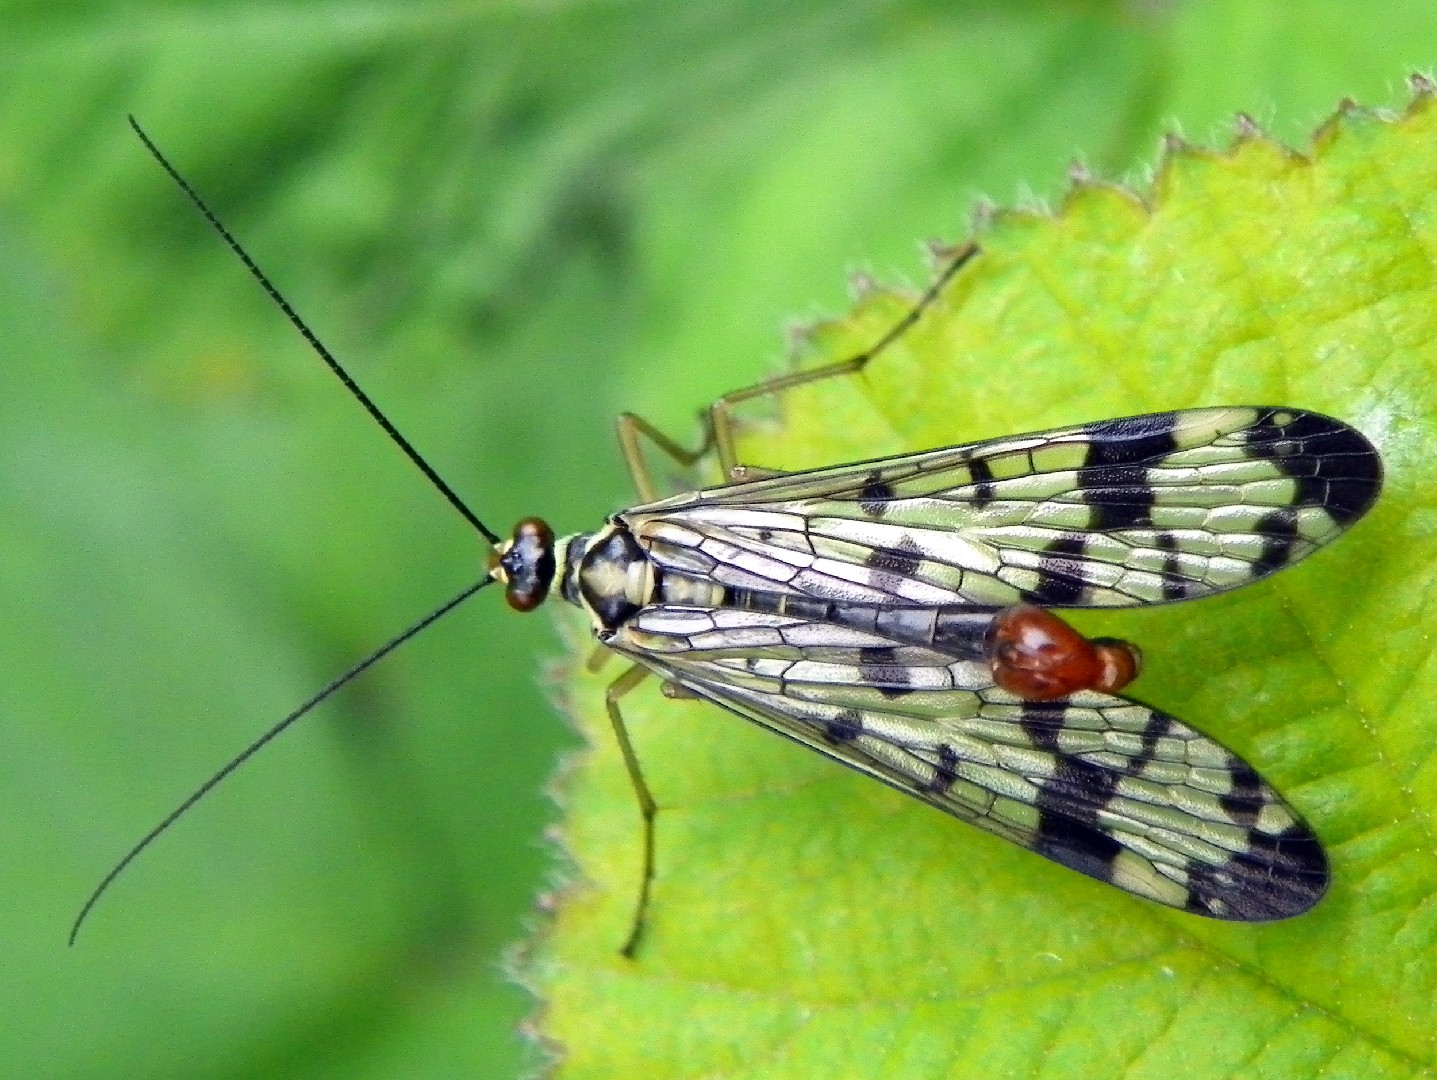 Mosca Escorpión (Panorpa communis)